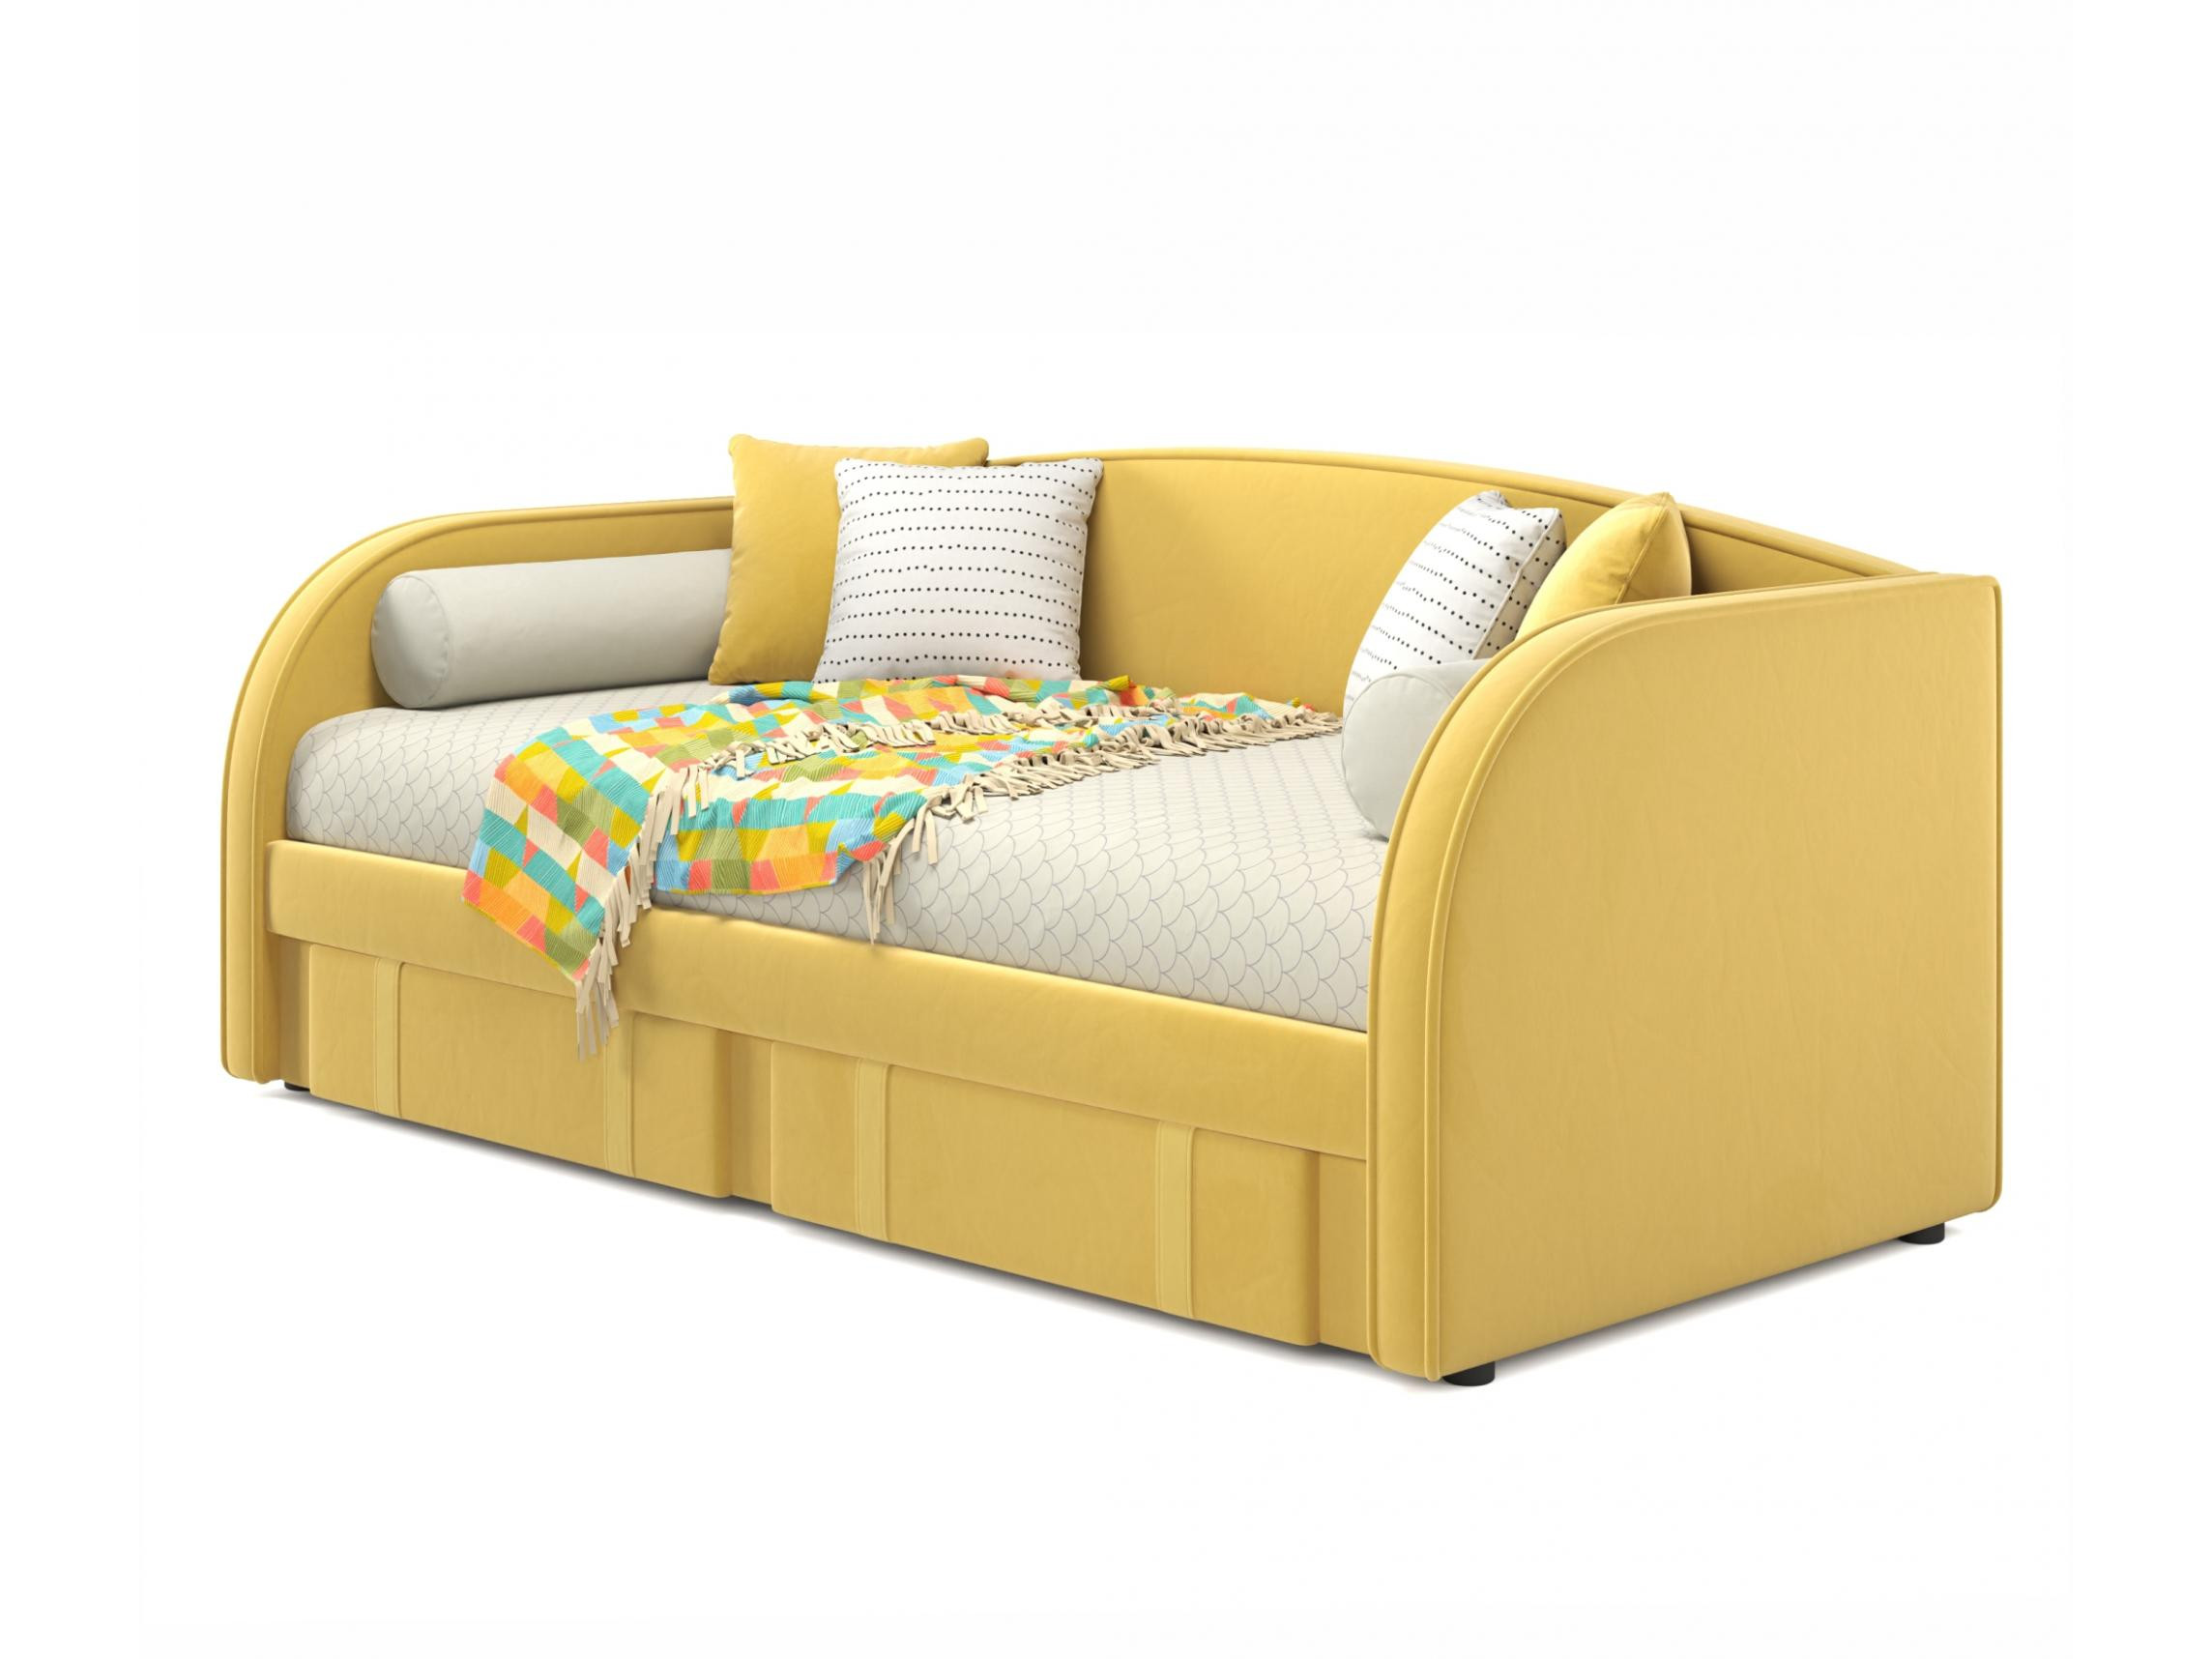 Мягкая кровать Elda 900 желтая с ортопедическим основанием желтый, Желтый, Велюр, ДСП